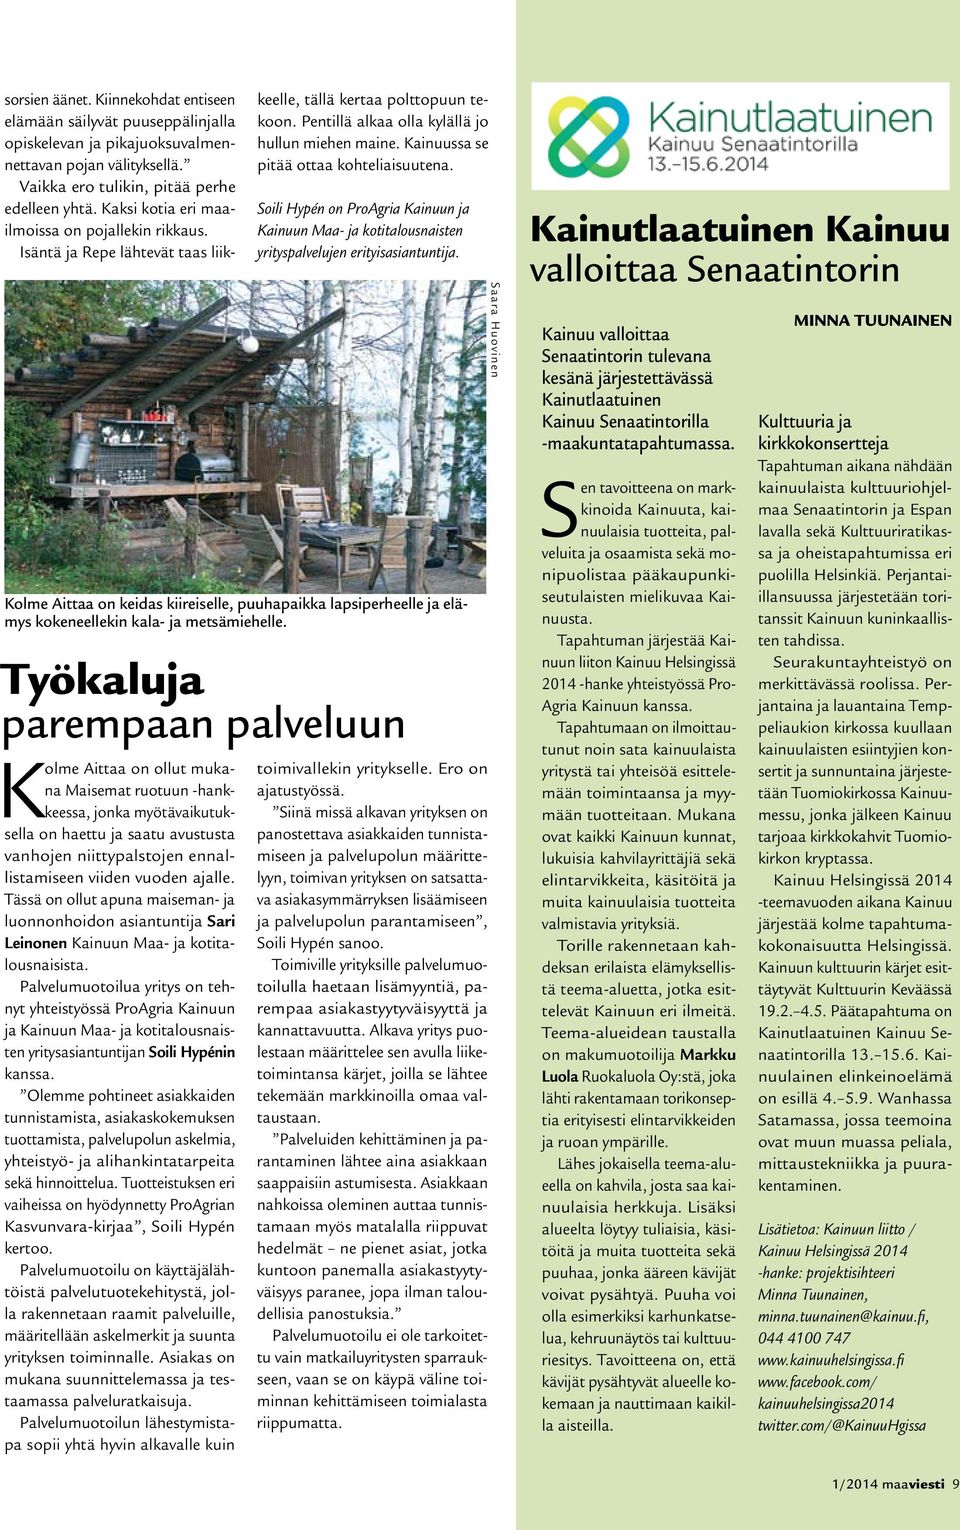 Palvelumuotoilua yritys on tehnyt yhteistyössä ProAgria Kainuun ja Kainuun Maa- ja kotitalousnaisten yritysasiantuntijan Soili Hypénin kanssa.